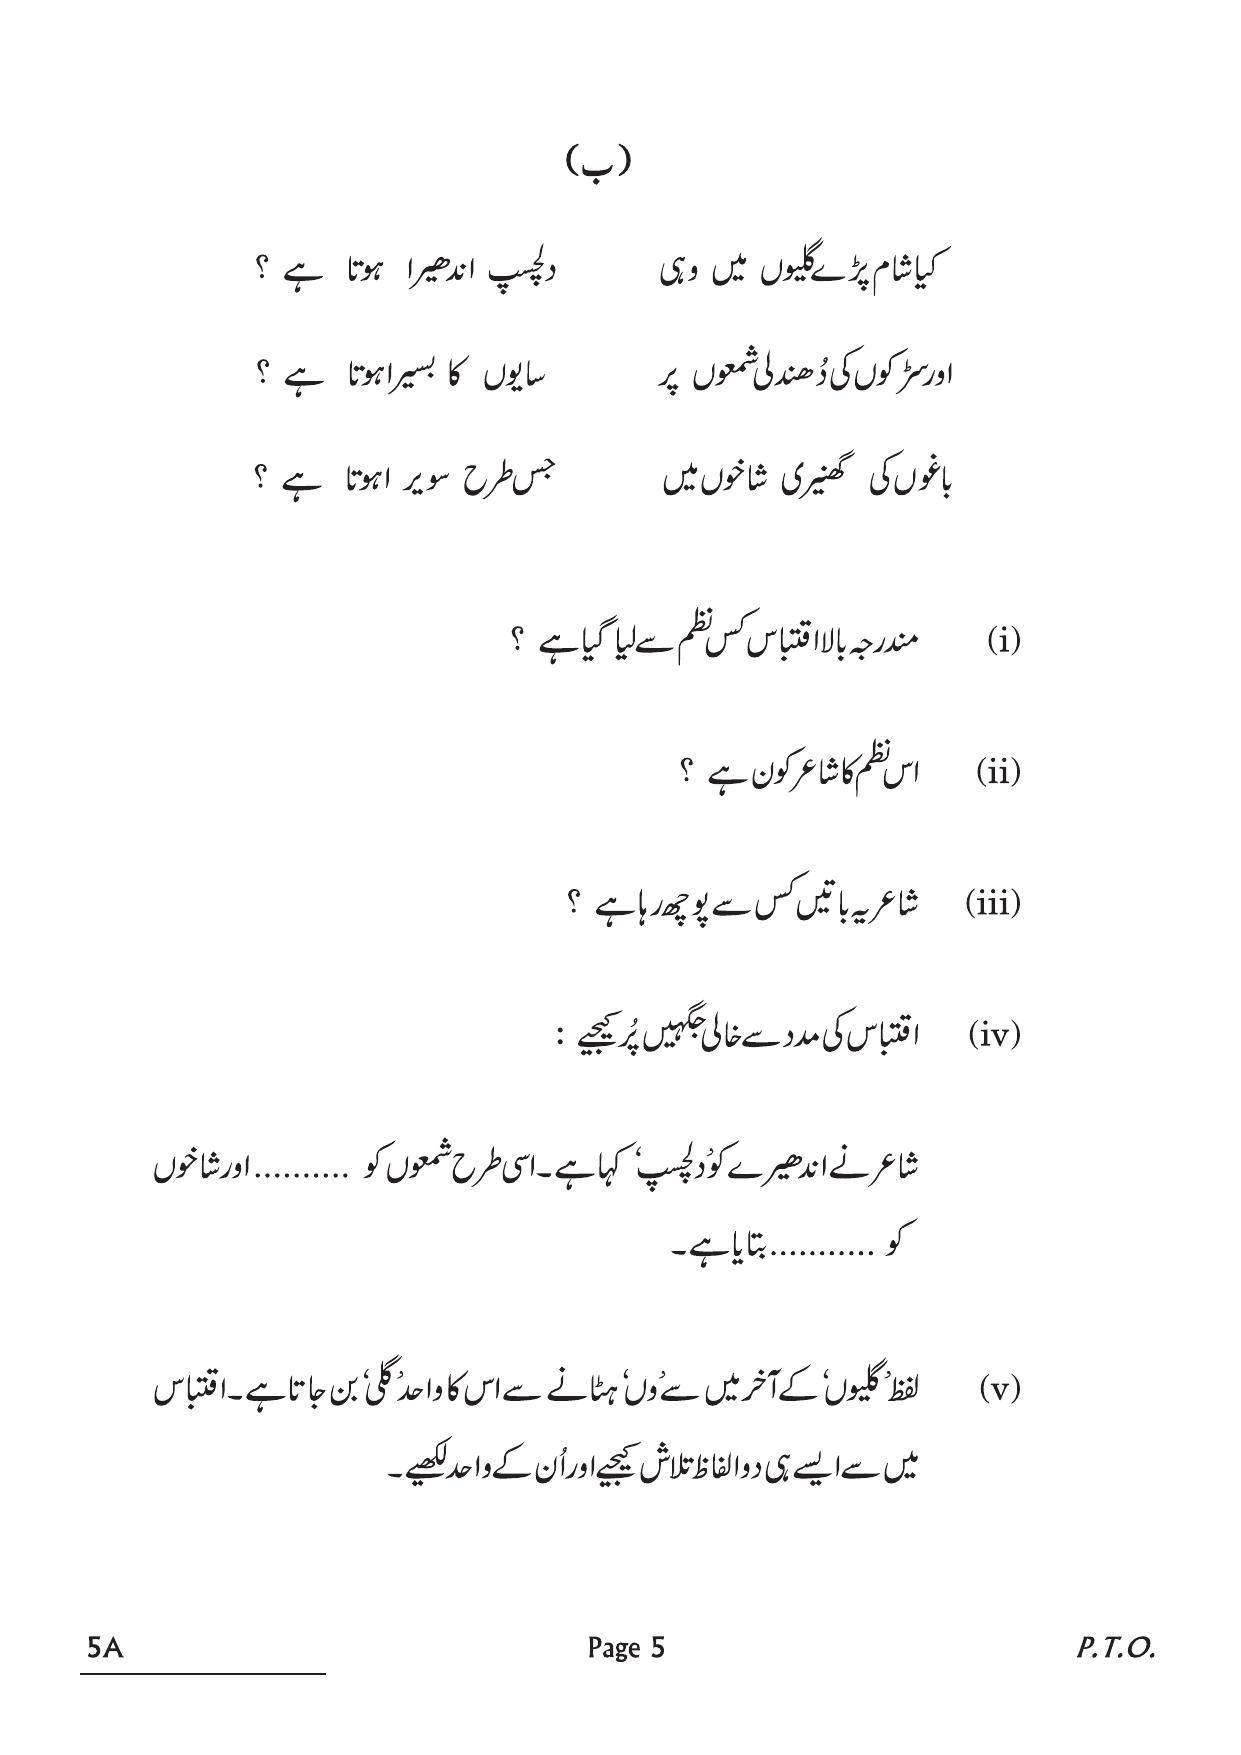 CBSE Class 10 5A Urdu A 2022 Question Paper - Page 5